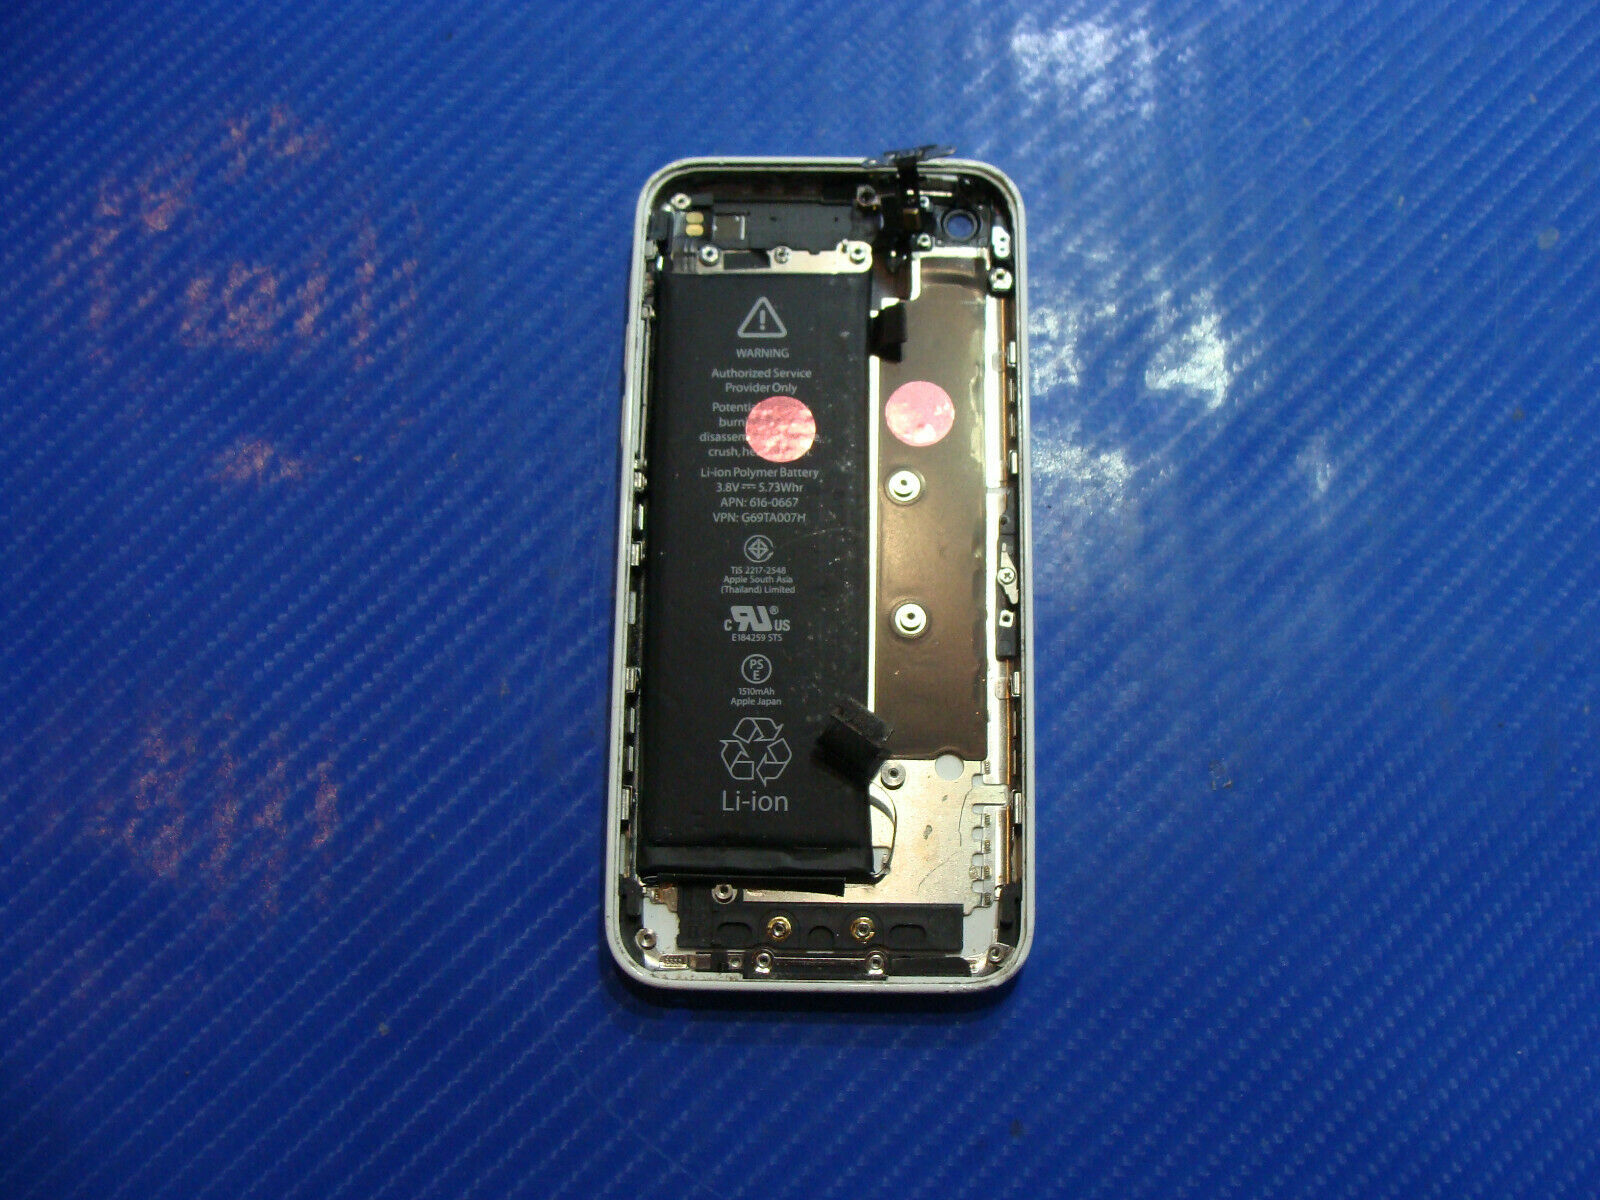 iPhone 5c A1532 4